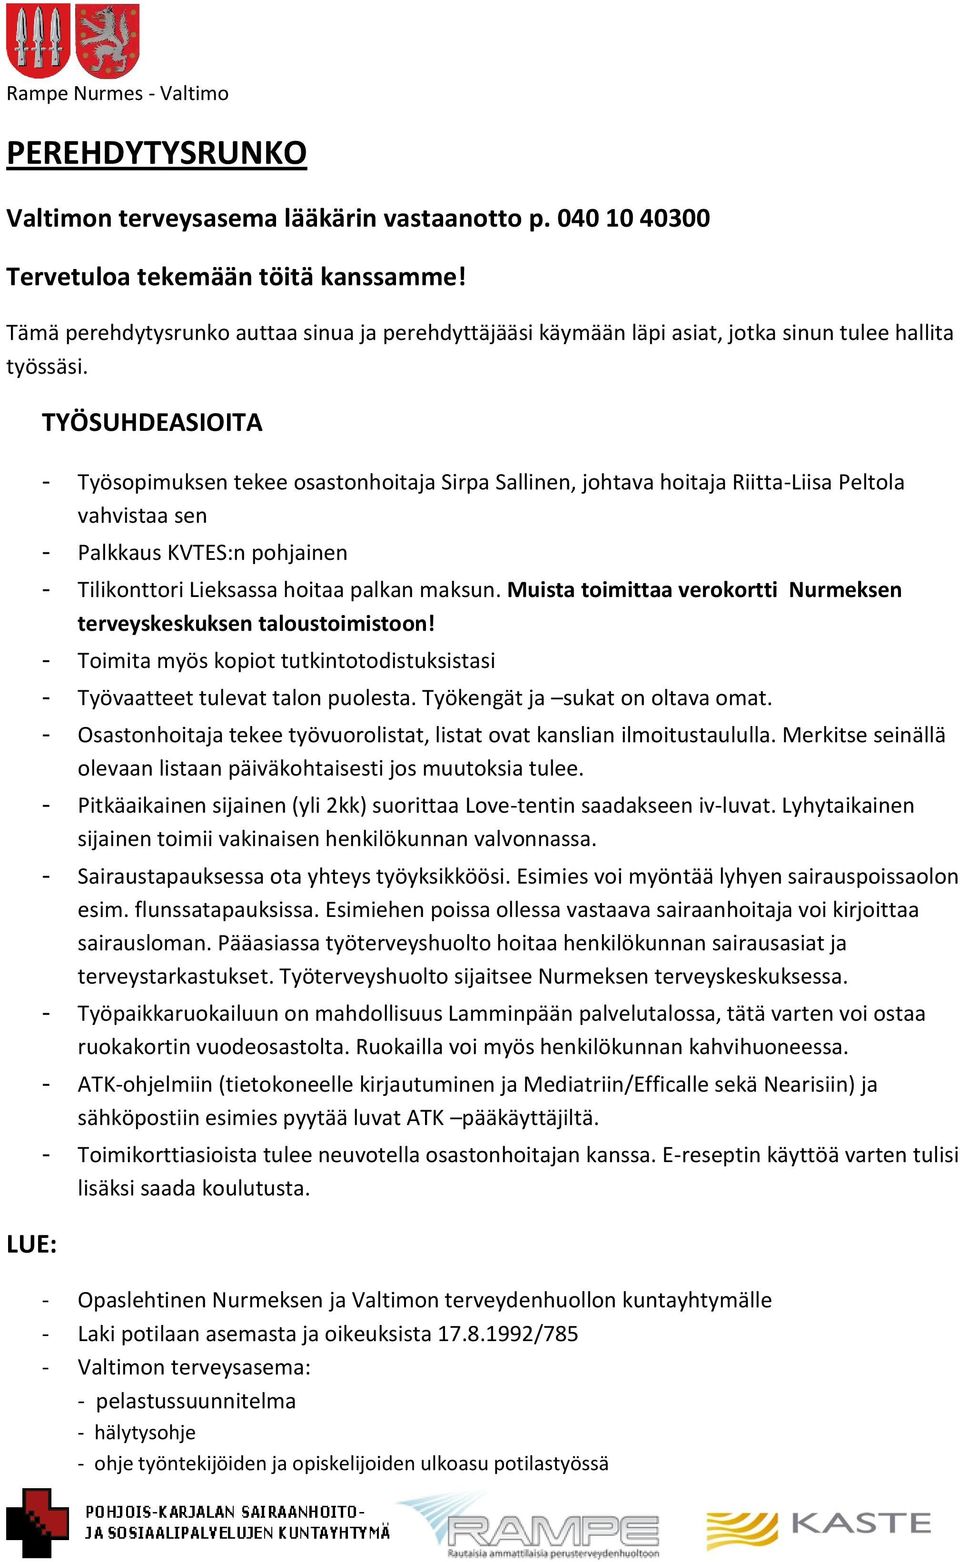 LUE: TYÖSUHDEASIOITA - Työsopimuksen tekee osastonhoitaja Sirpa Sallinen, johtava hoitaja Riitta-Liisa Peltola vahvistaa sen - Palkkaus KVTES:n pohjainen - Tilikonttori Lieksassa hoitaa palkan maksun.